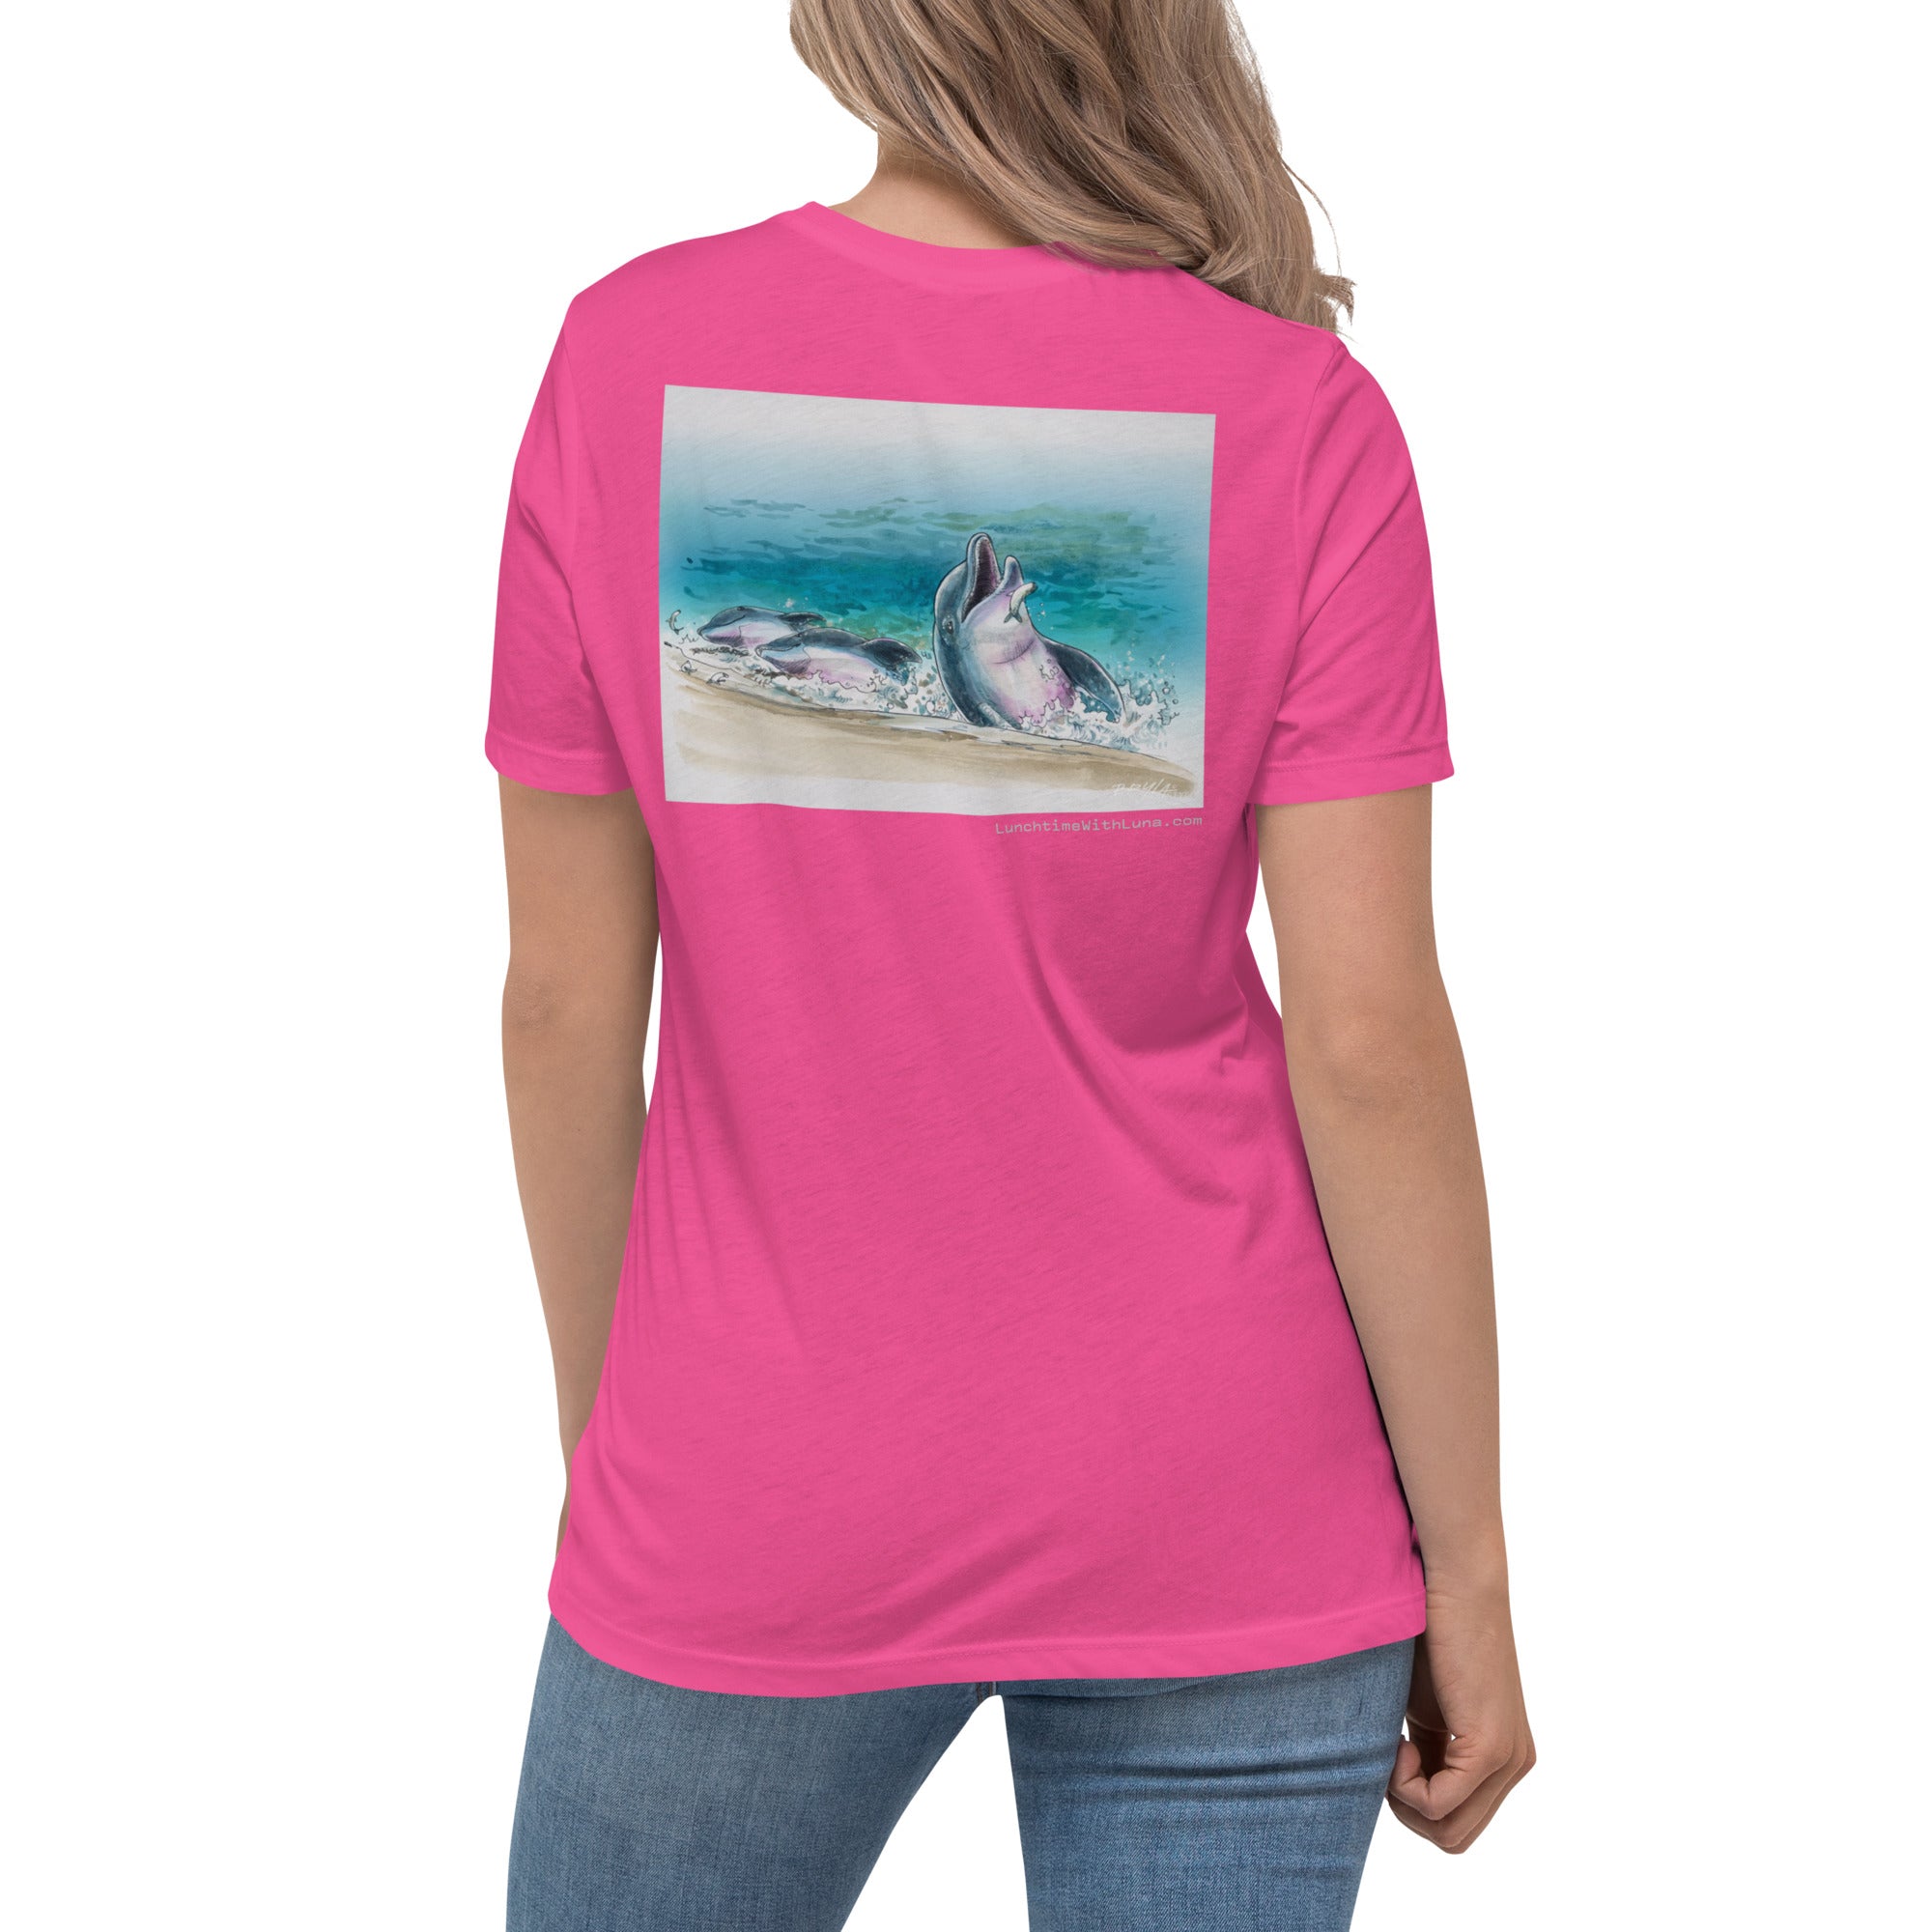 "Fresh Catch" Women's Relaxed T-Shirt